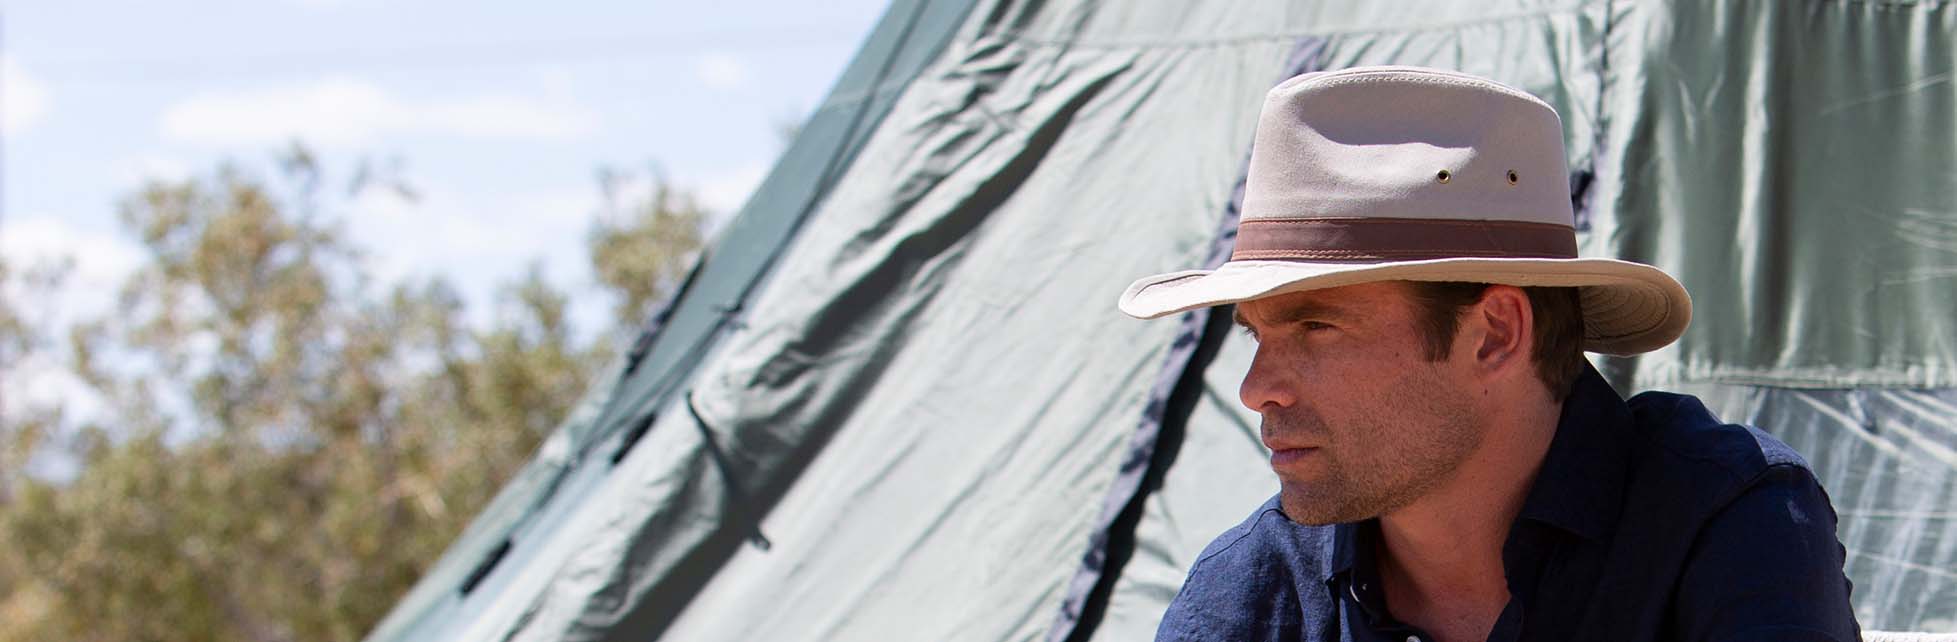 Camping Hats